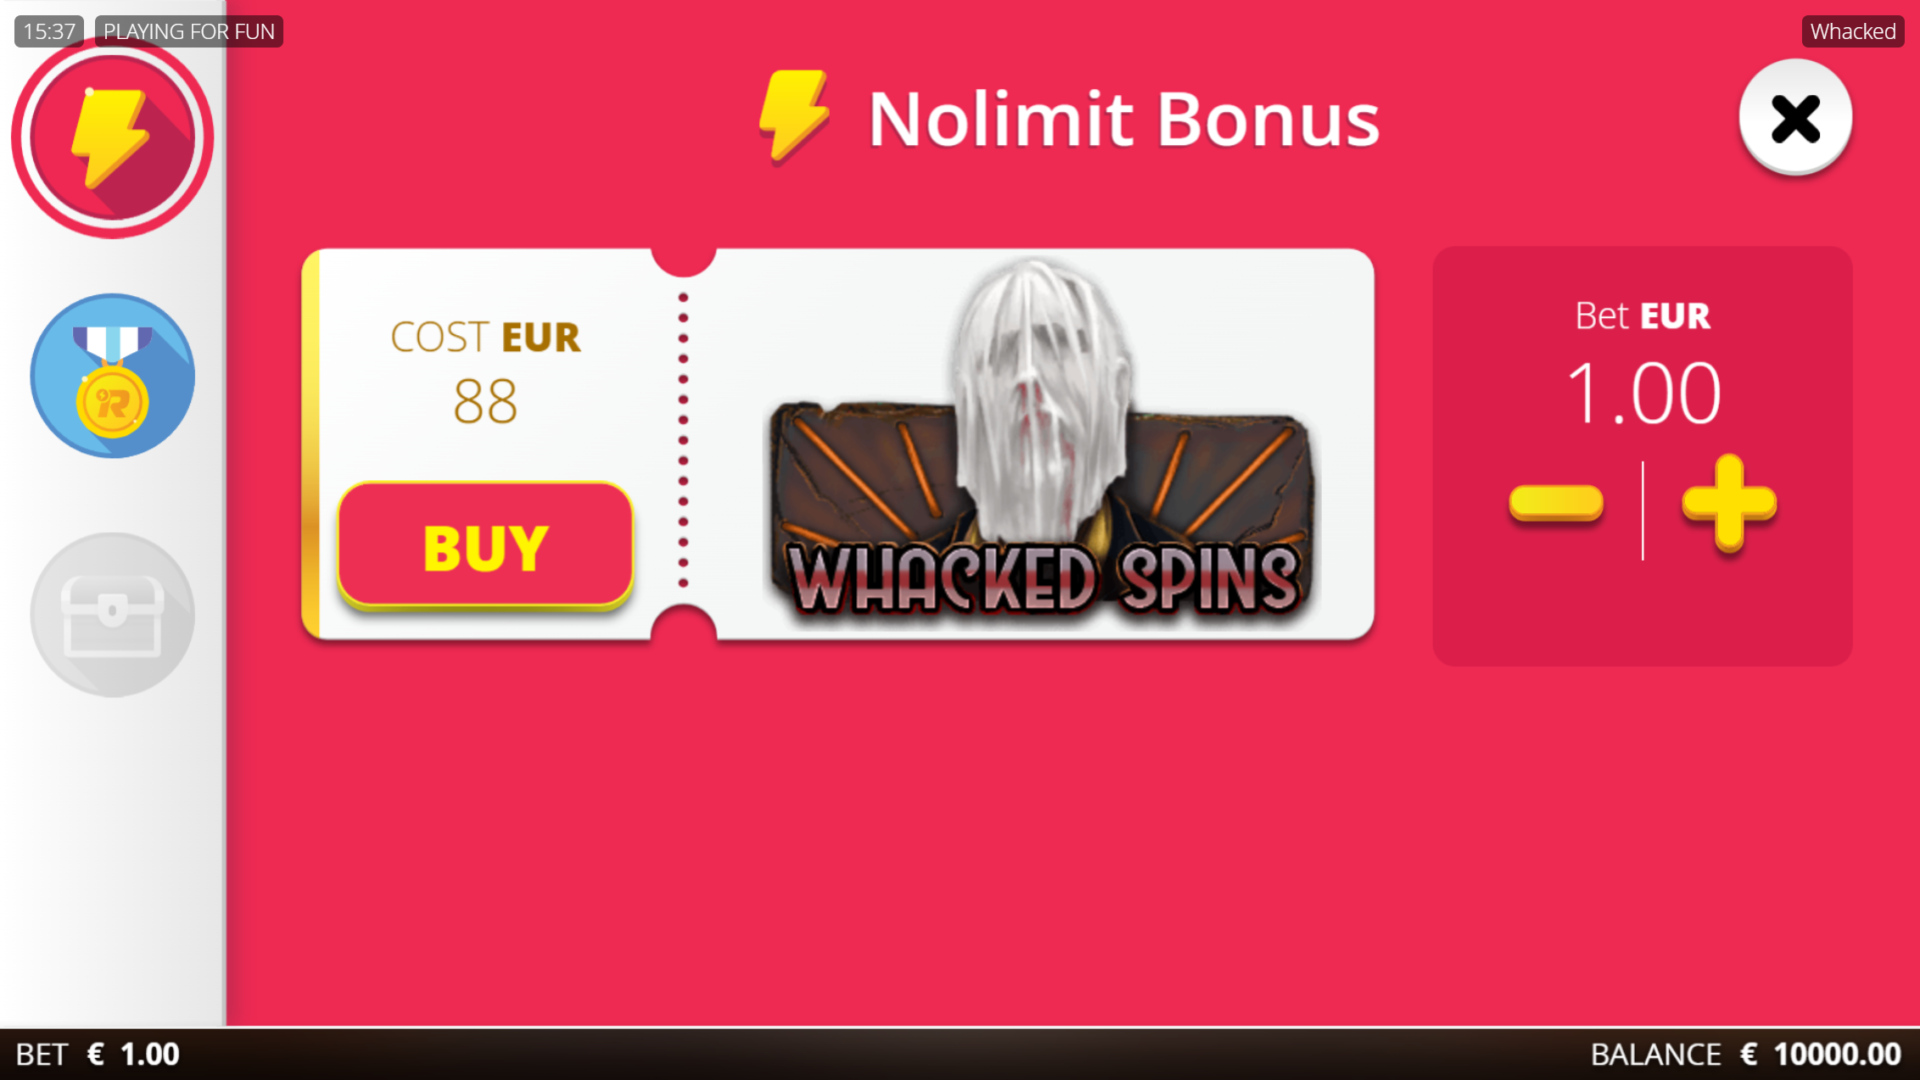 Whacked! Slot - Bonus Buy Option